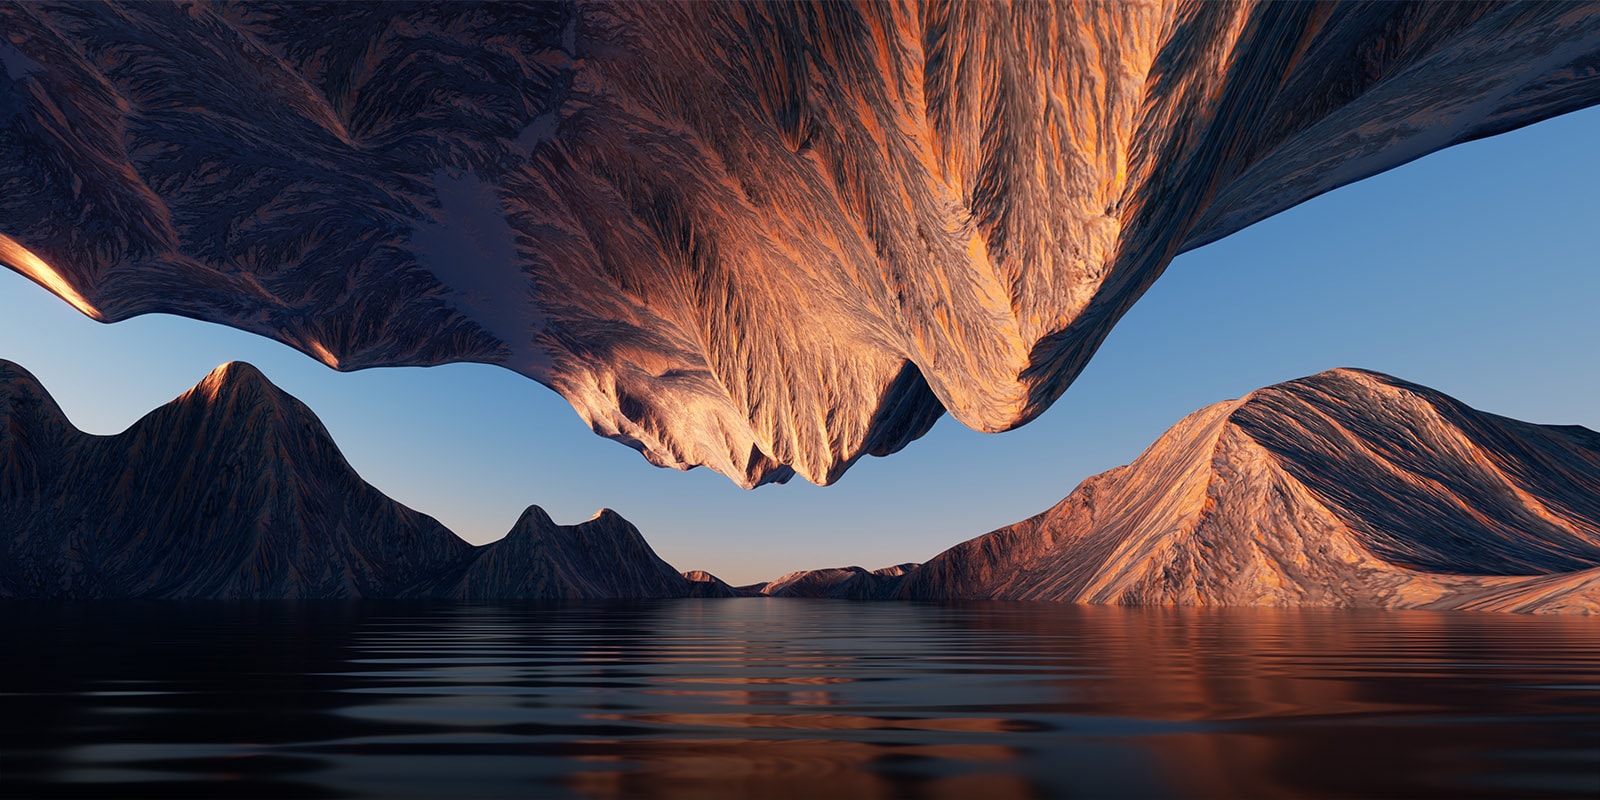 Gamtos vaizdas, kuriame vienas priešais kitą esantys uolų kalnai atskleidžia kontrastą ir detales.